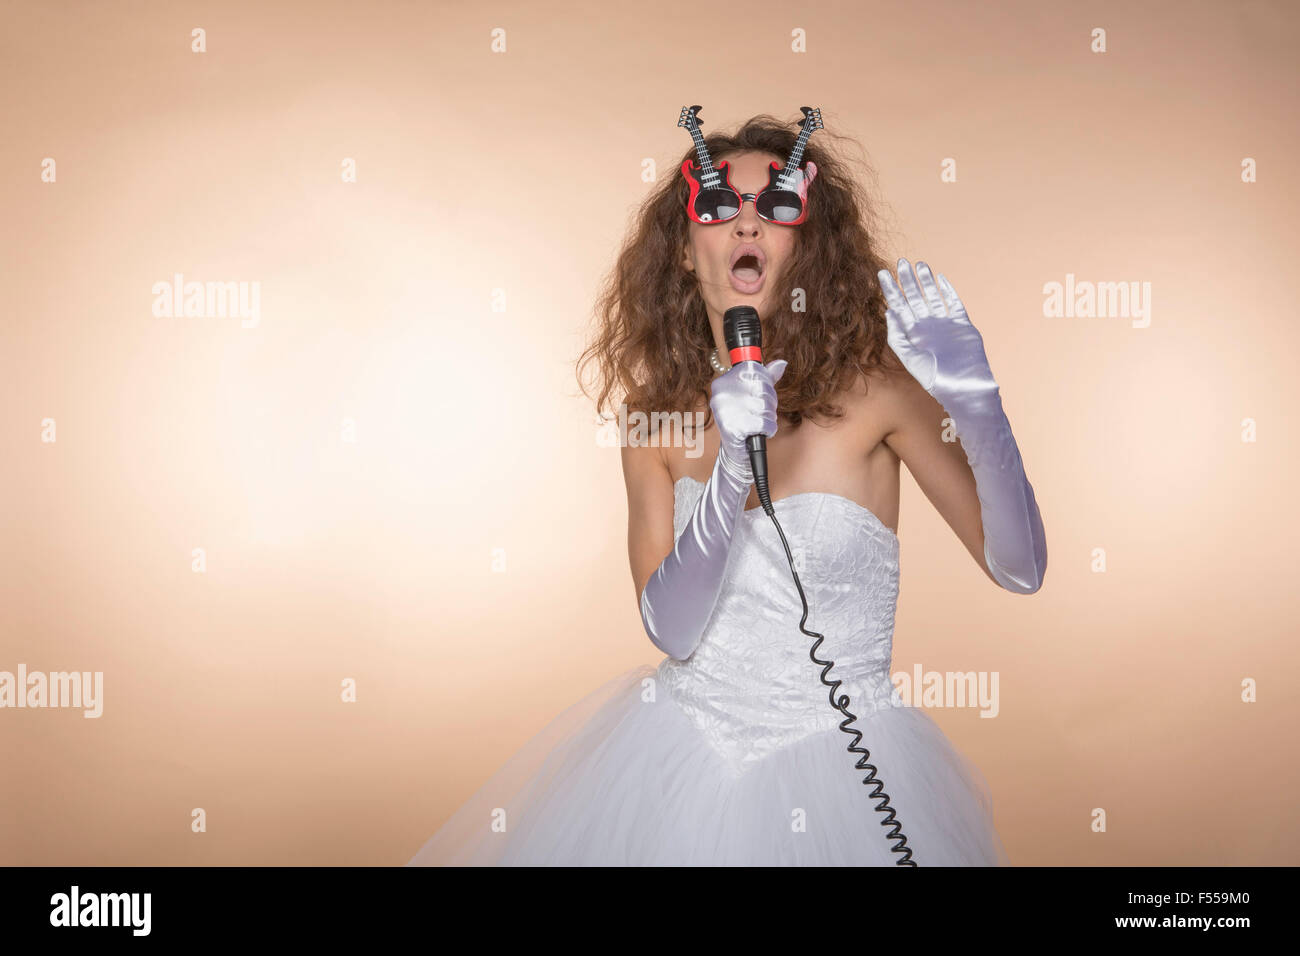 En forme de guitare en mariée excités chant lunettes contre l'arrière-plan de couleur Banque D'Images